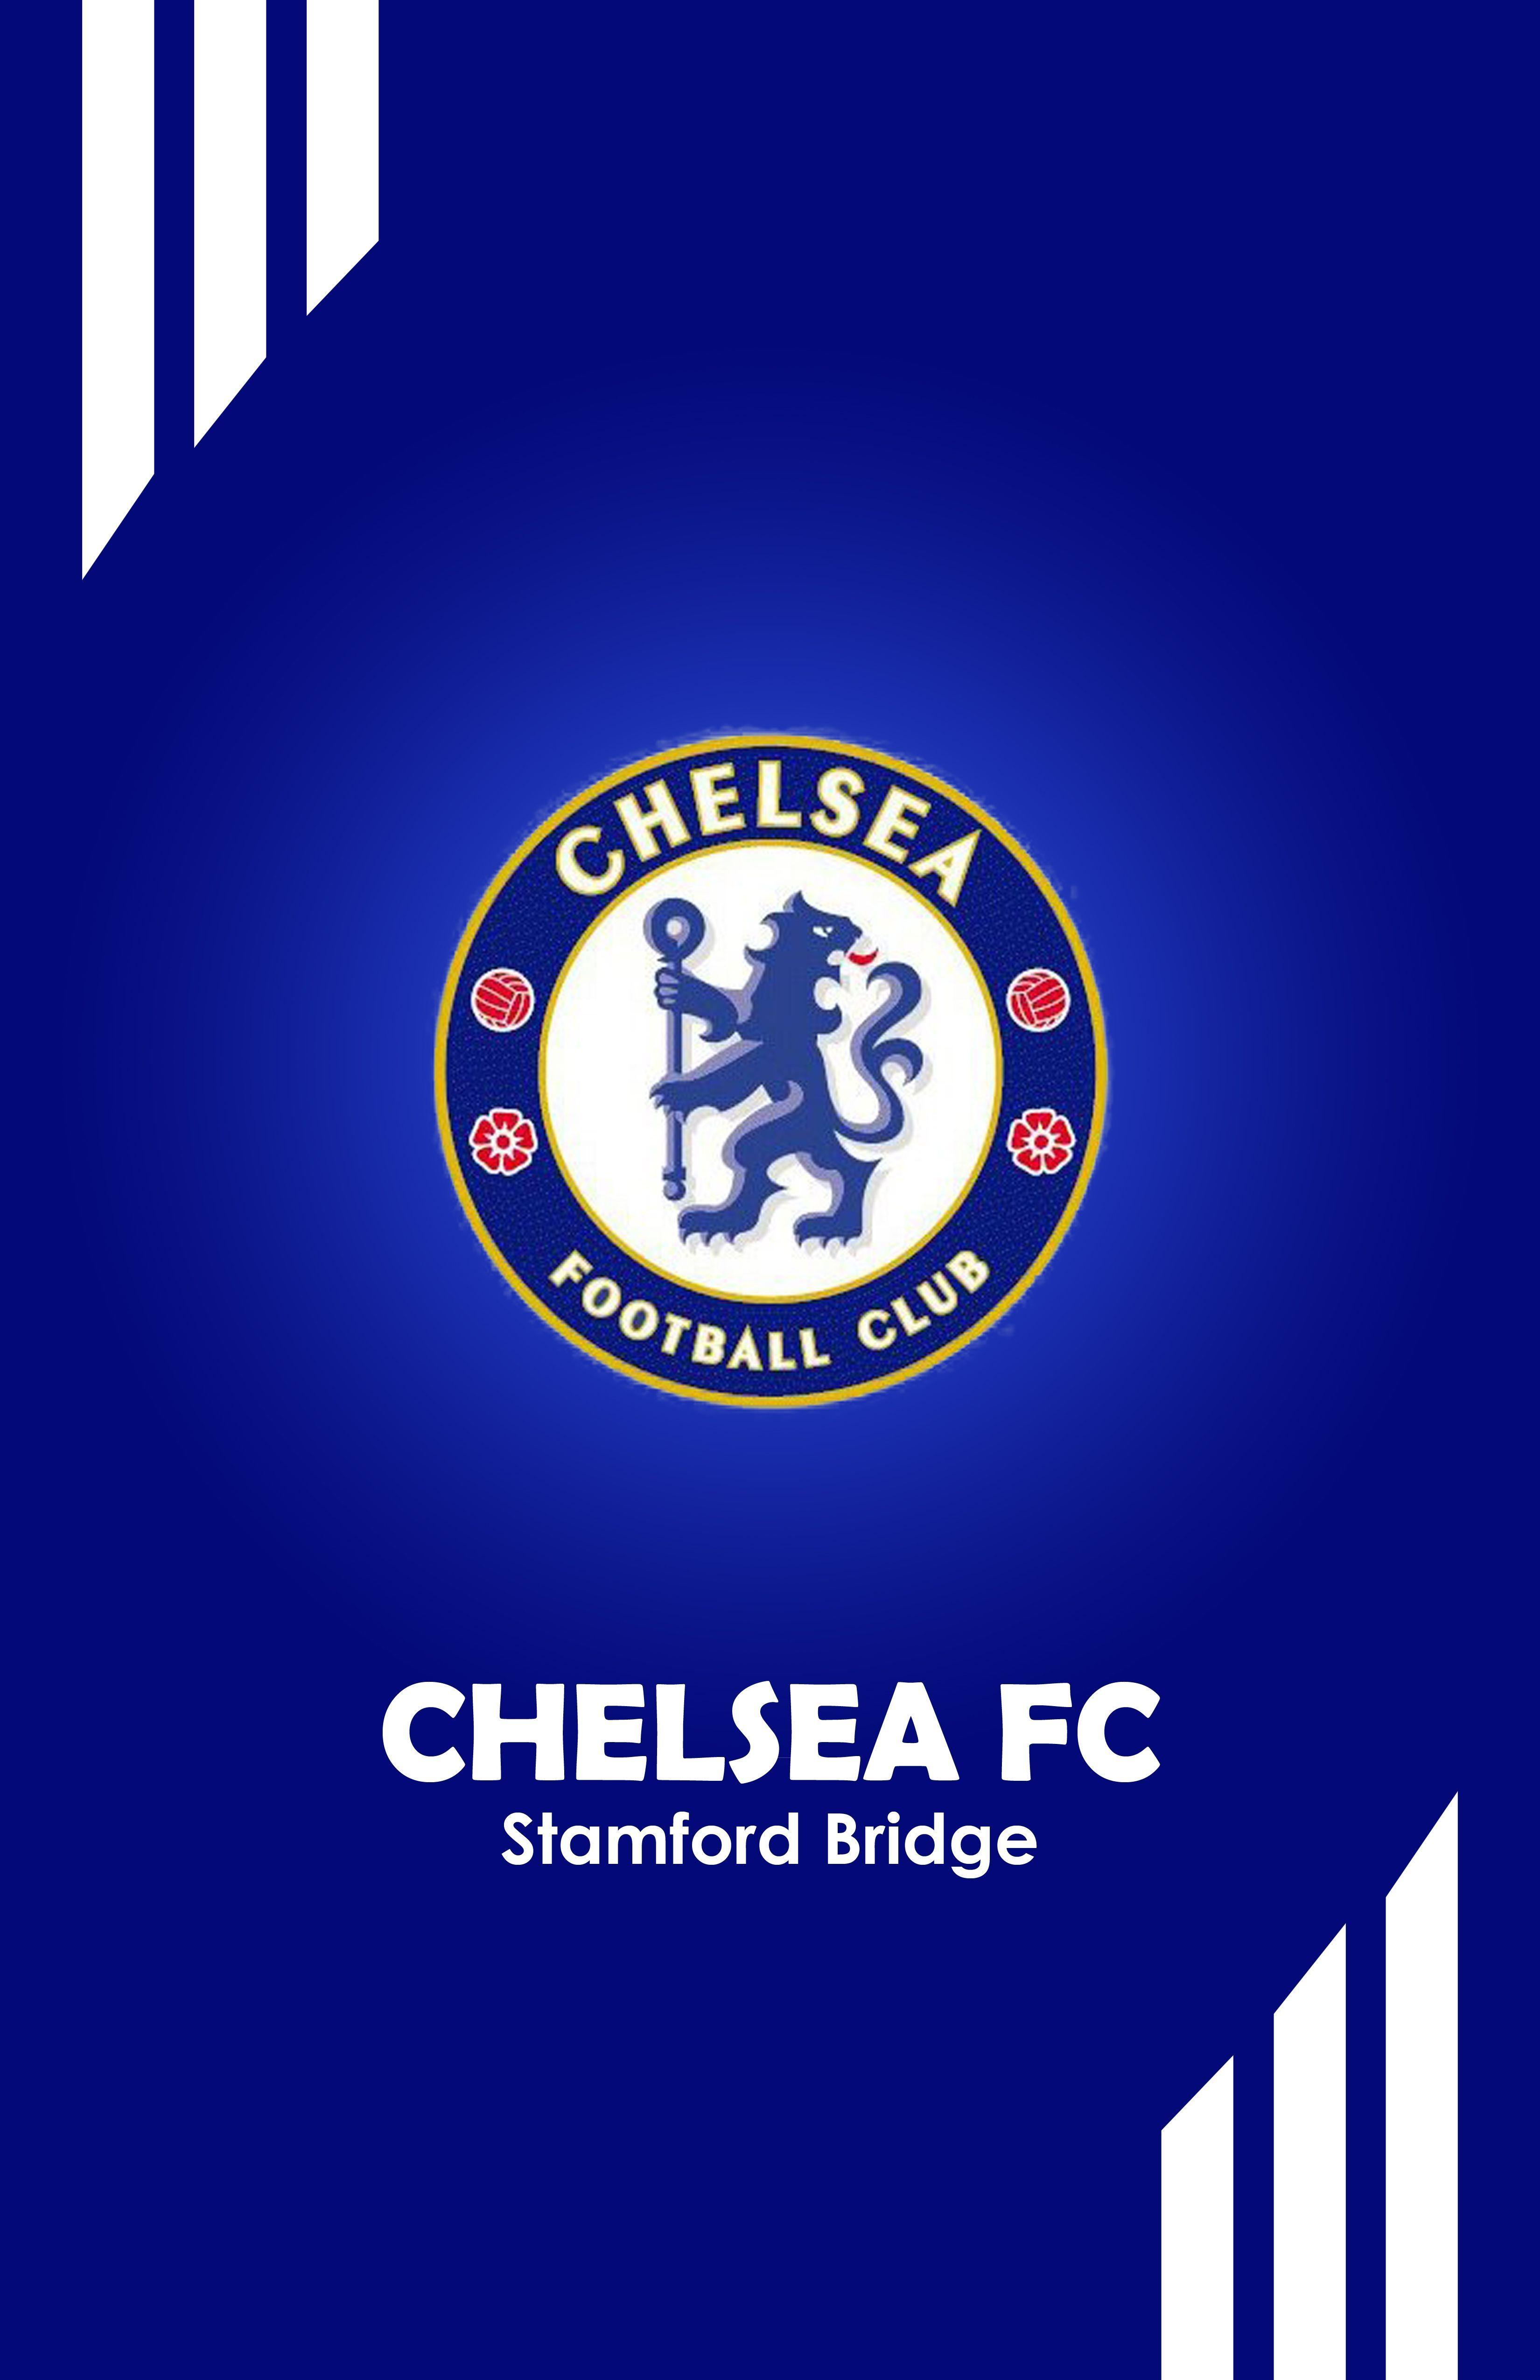 Chelsea FC wallpaper by ElnazTajaddod  Download on ZEDGE  f4a0